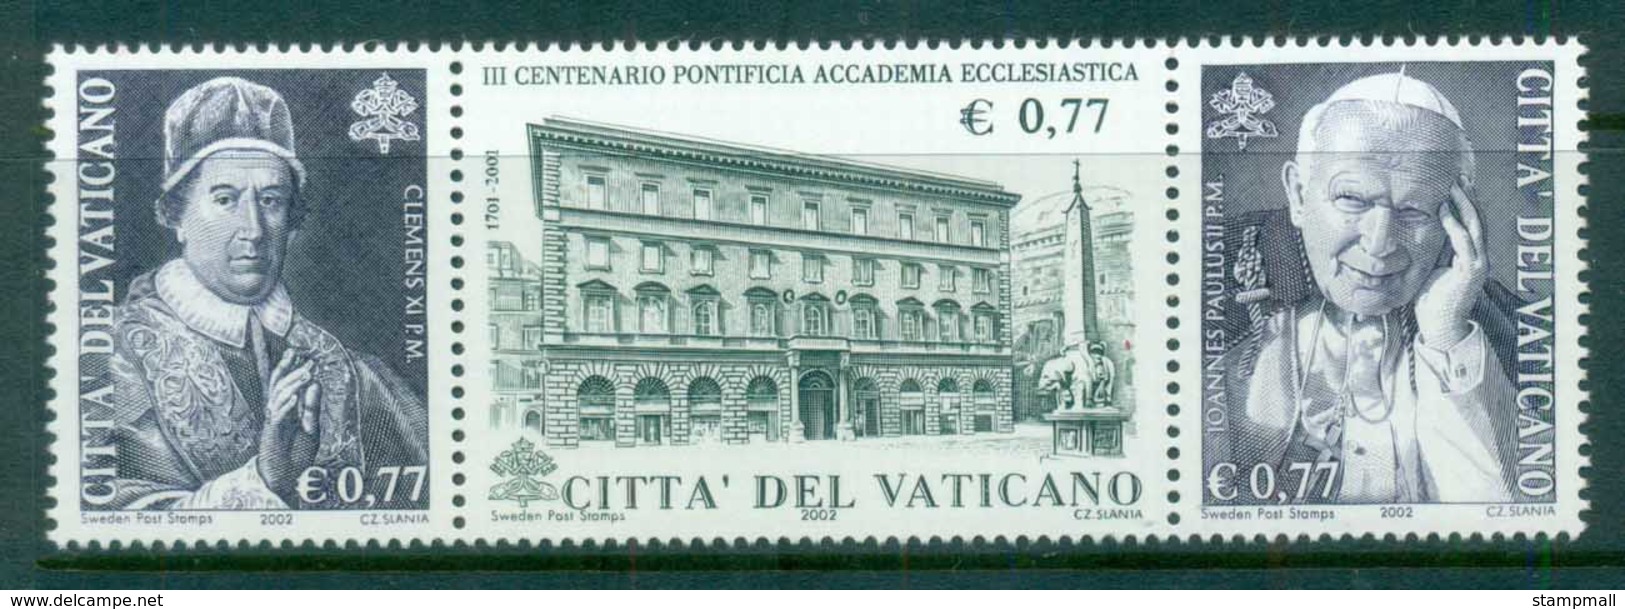 Vatican 2002 Pontifical Ecclesiastical Academy MUH - Nuevos